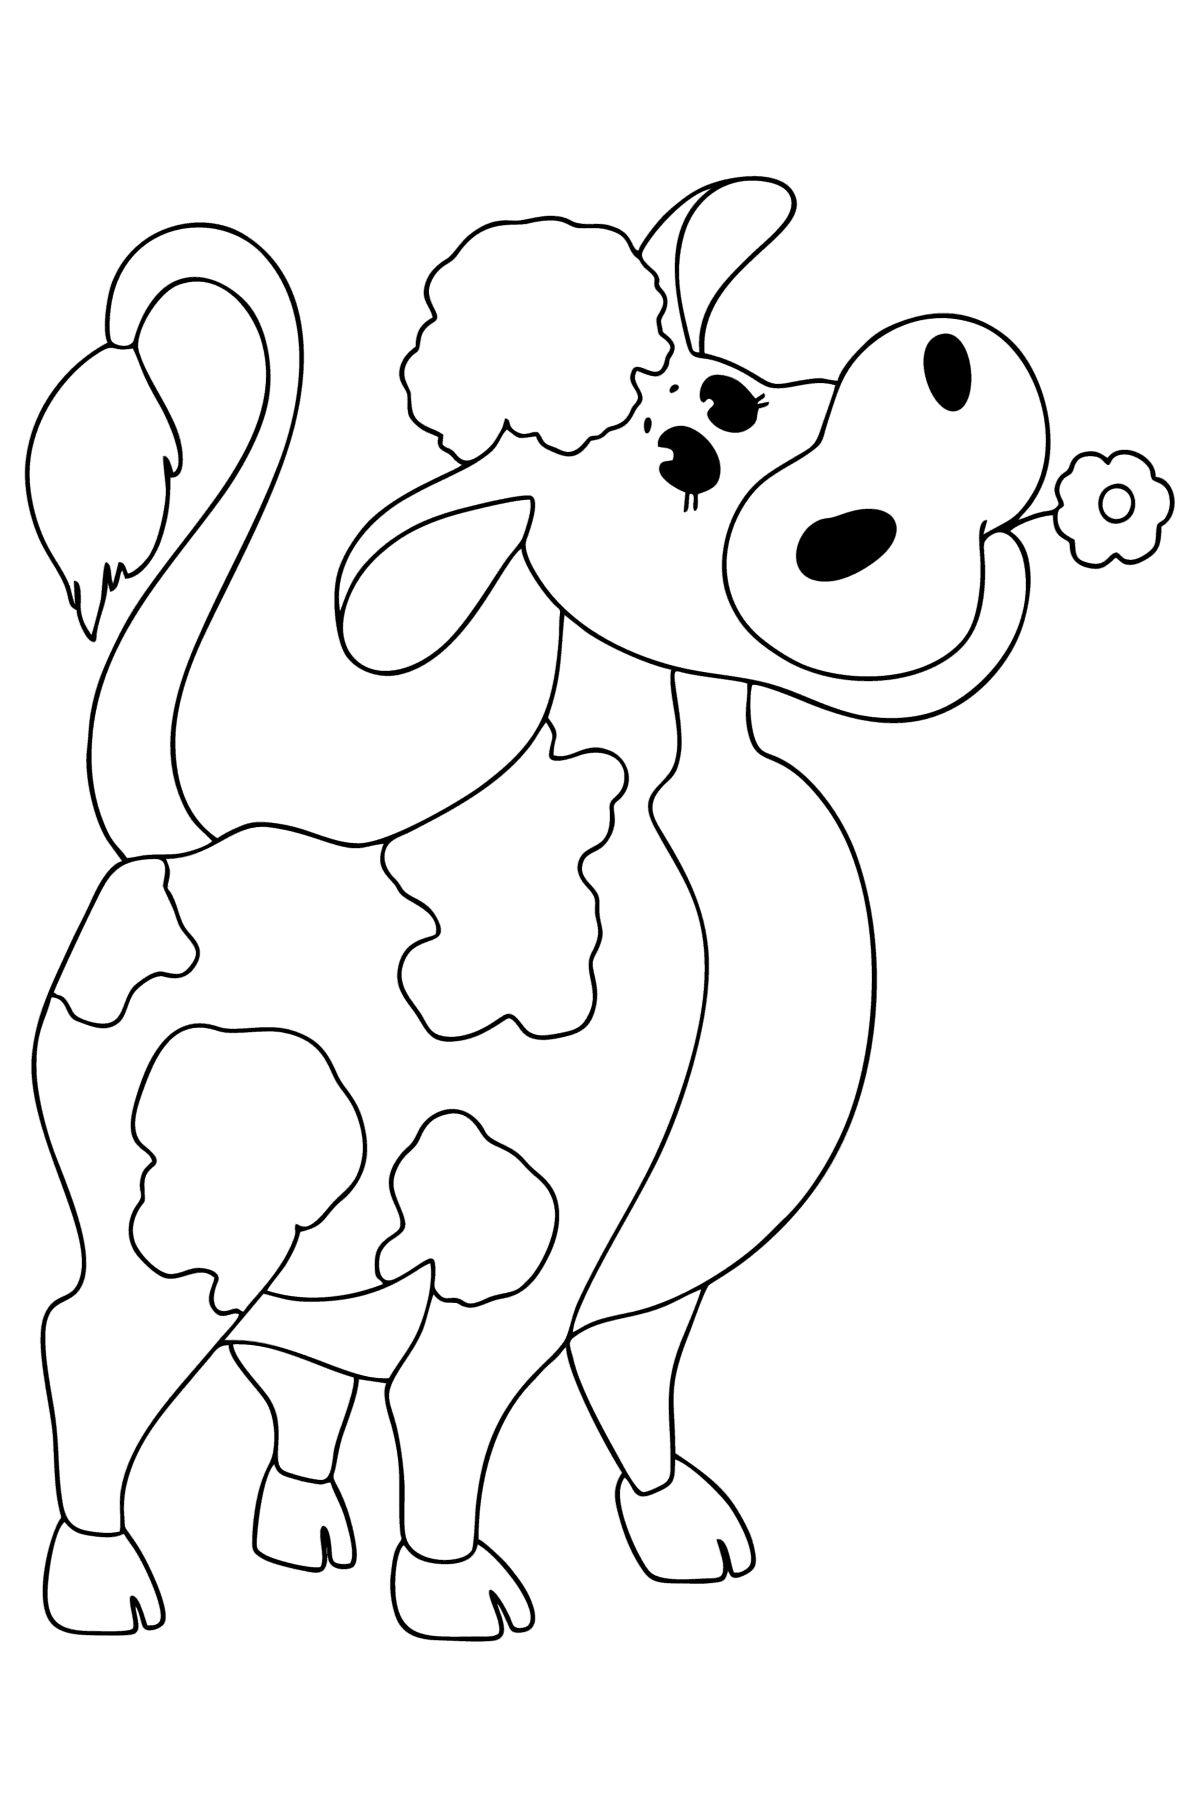 Раскраска теленок - Картинки для Детей